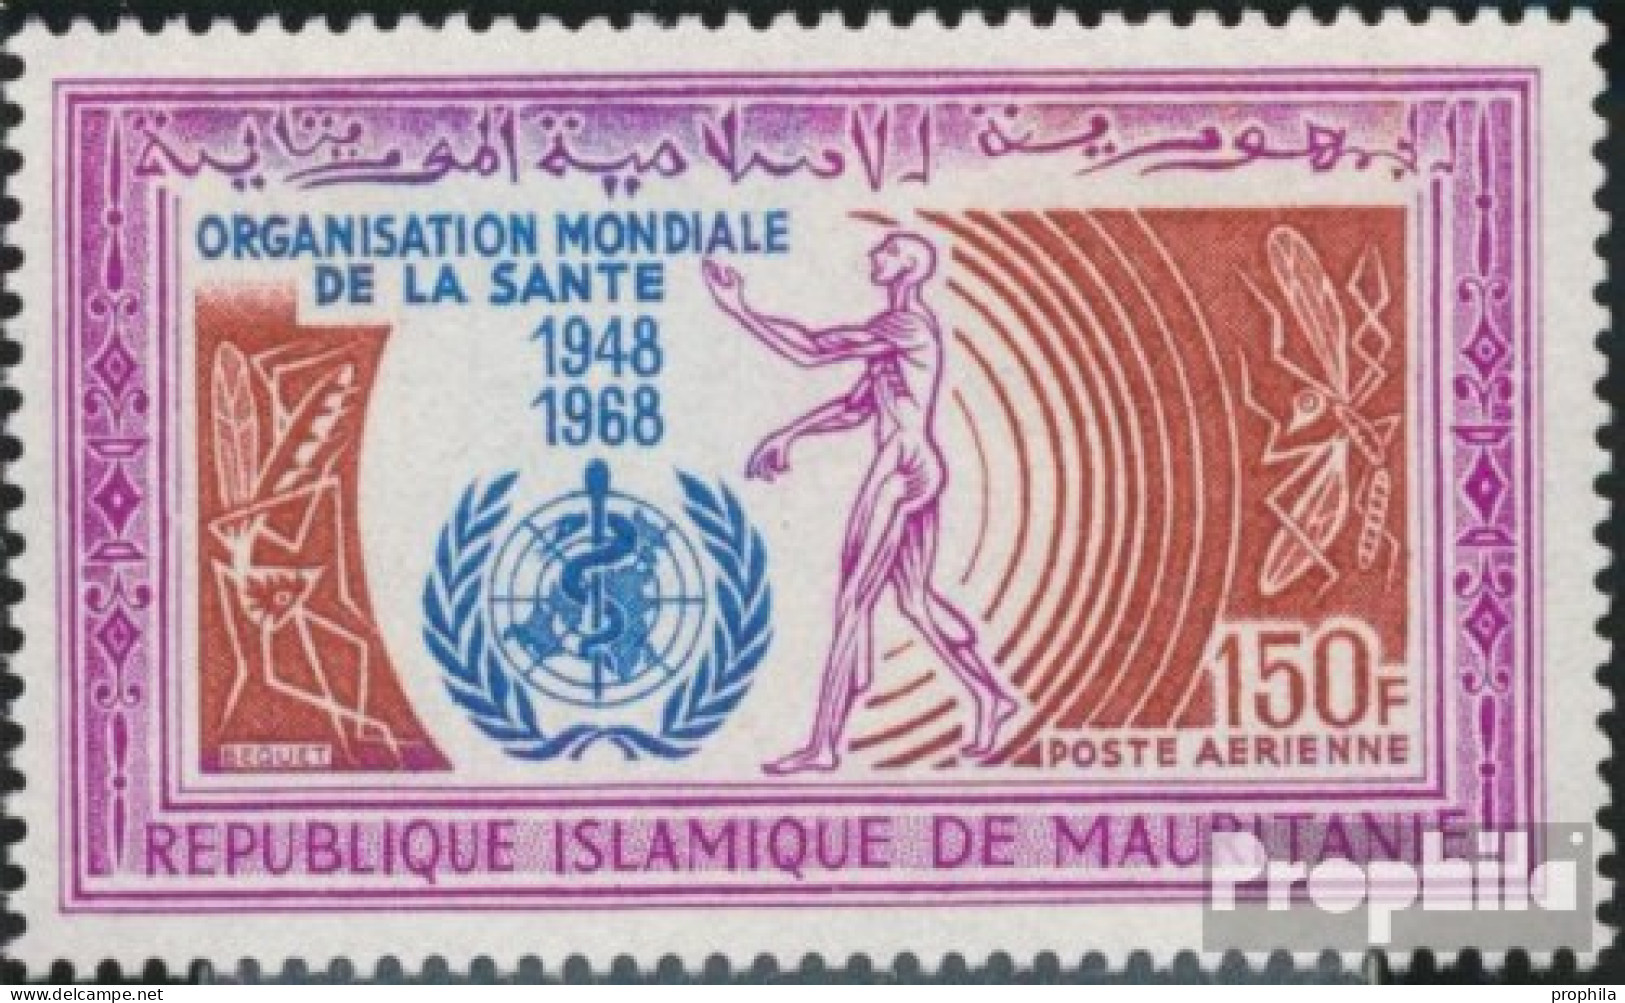 Mauretanien 341 (kompl.Ausg.) Postfrisch 1968 WHO - Mauretanien (1960-...)